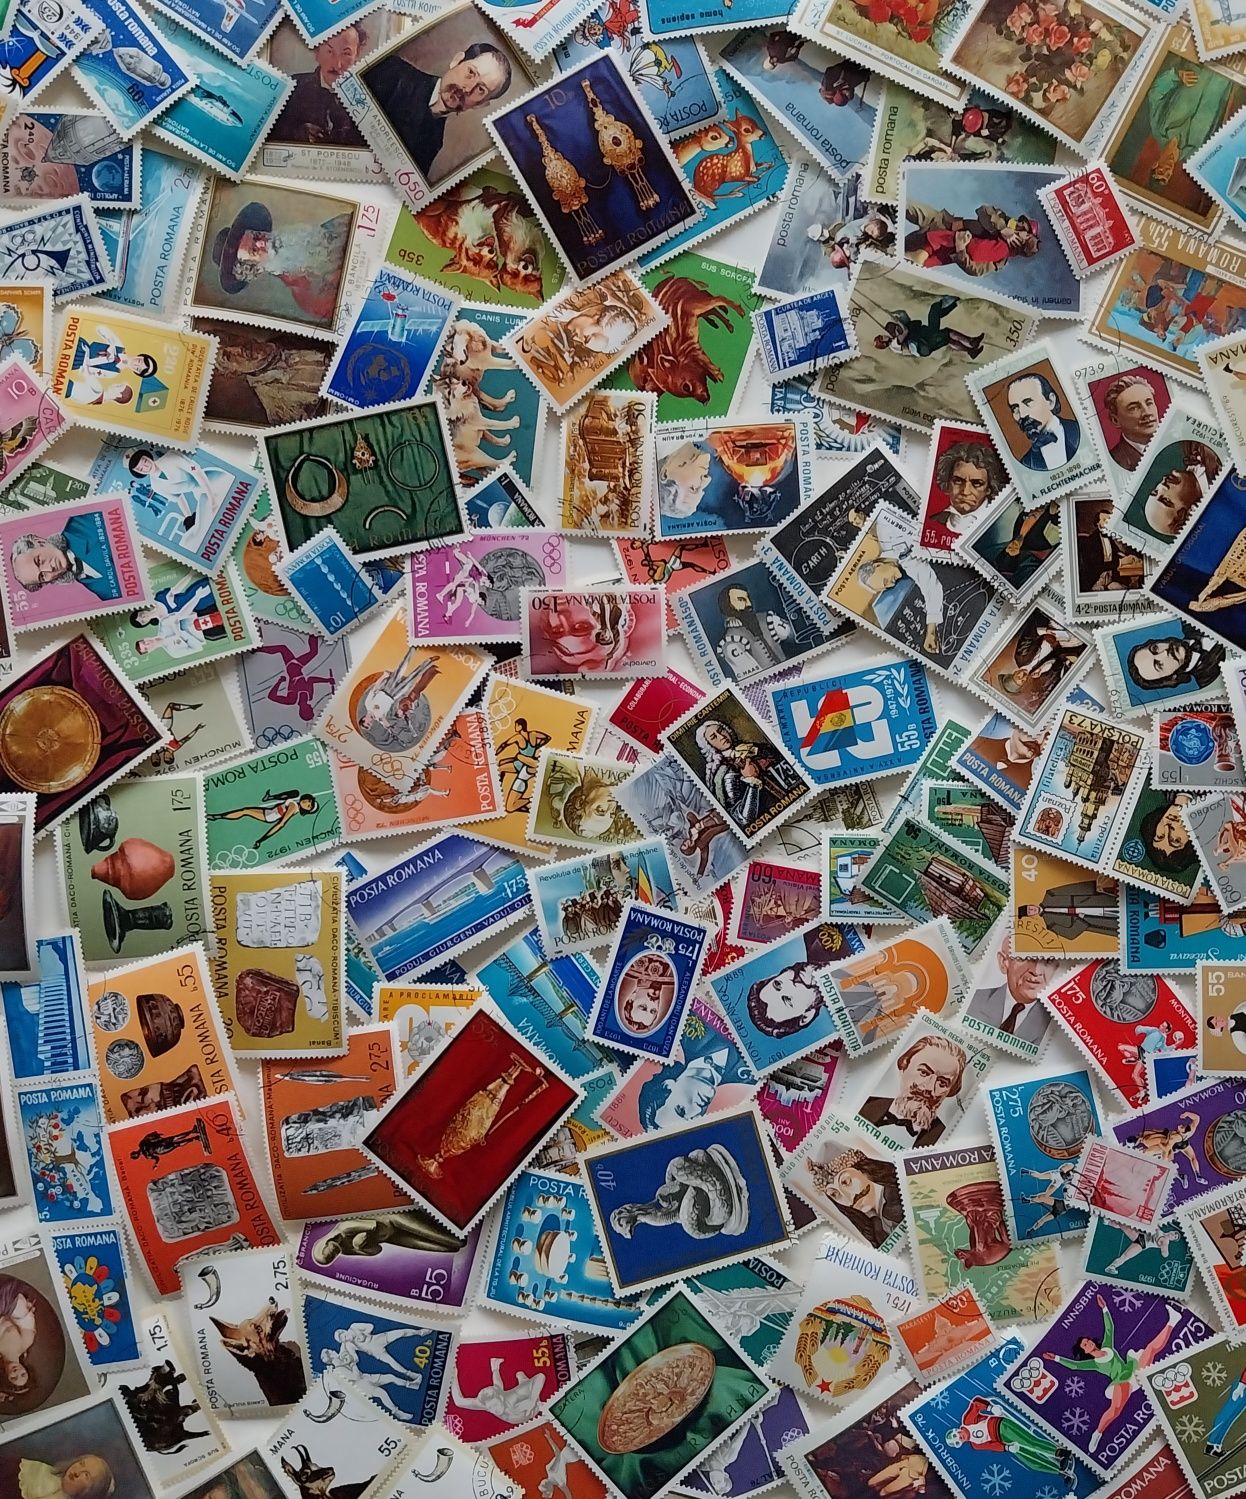 Loturi de timbre stampilate Romania 10 lei 100 de timbre